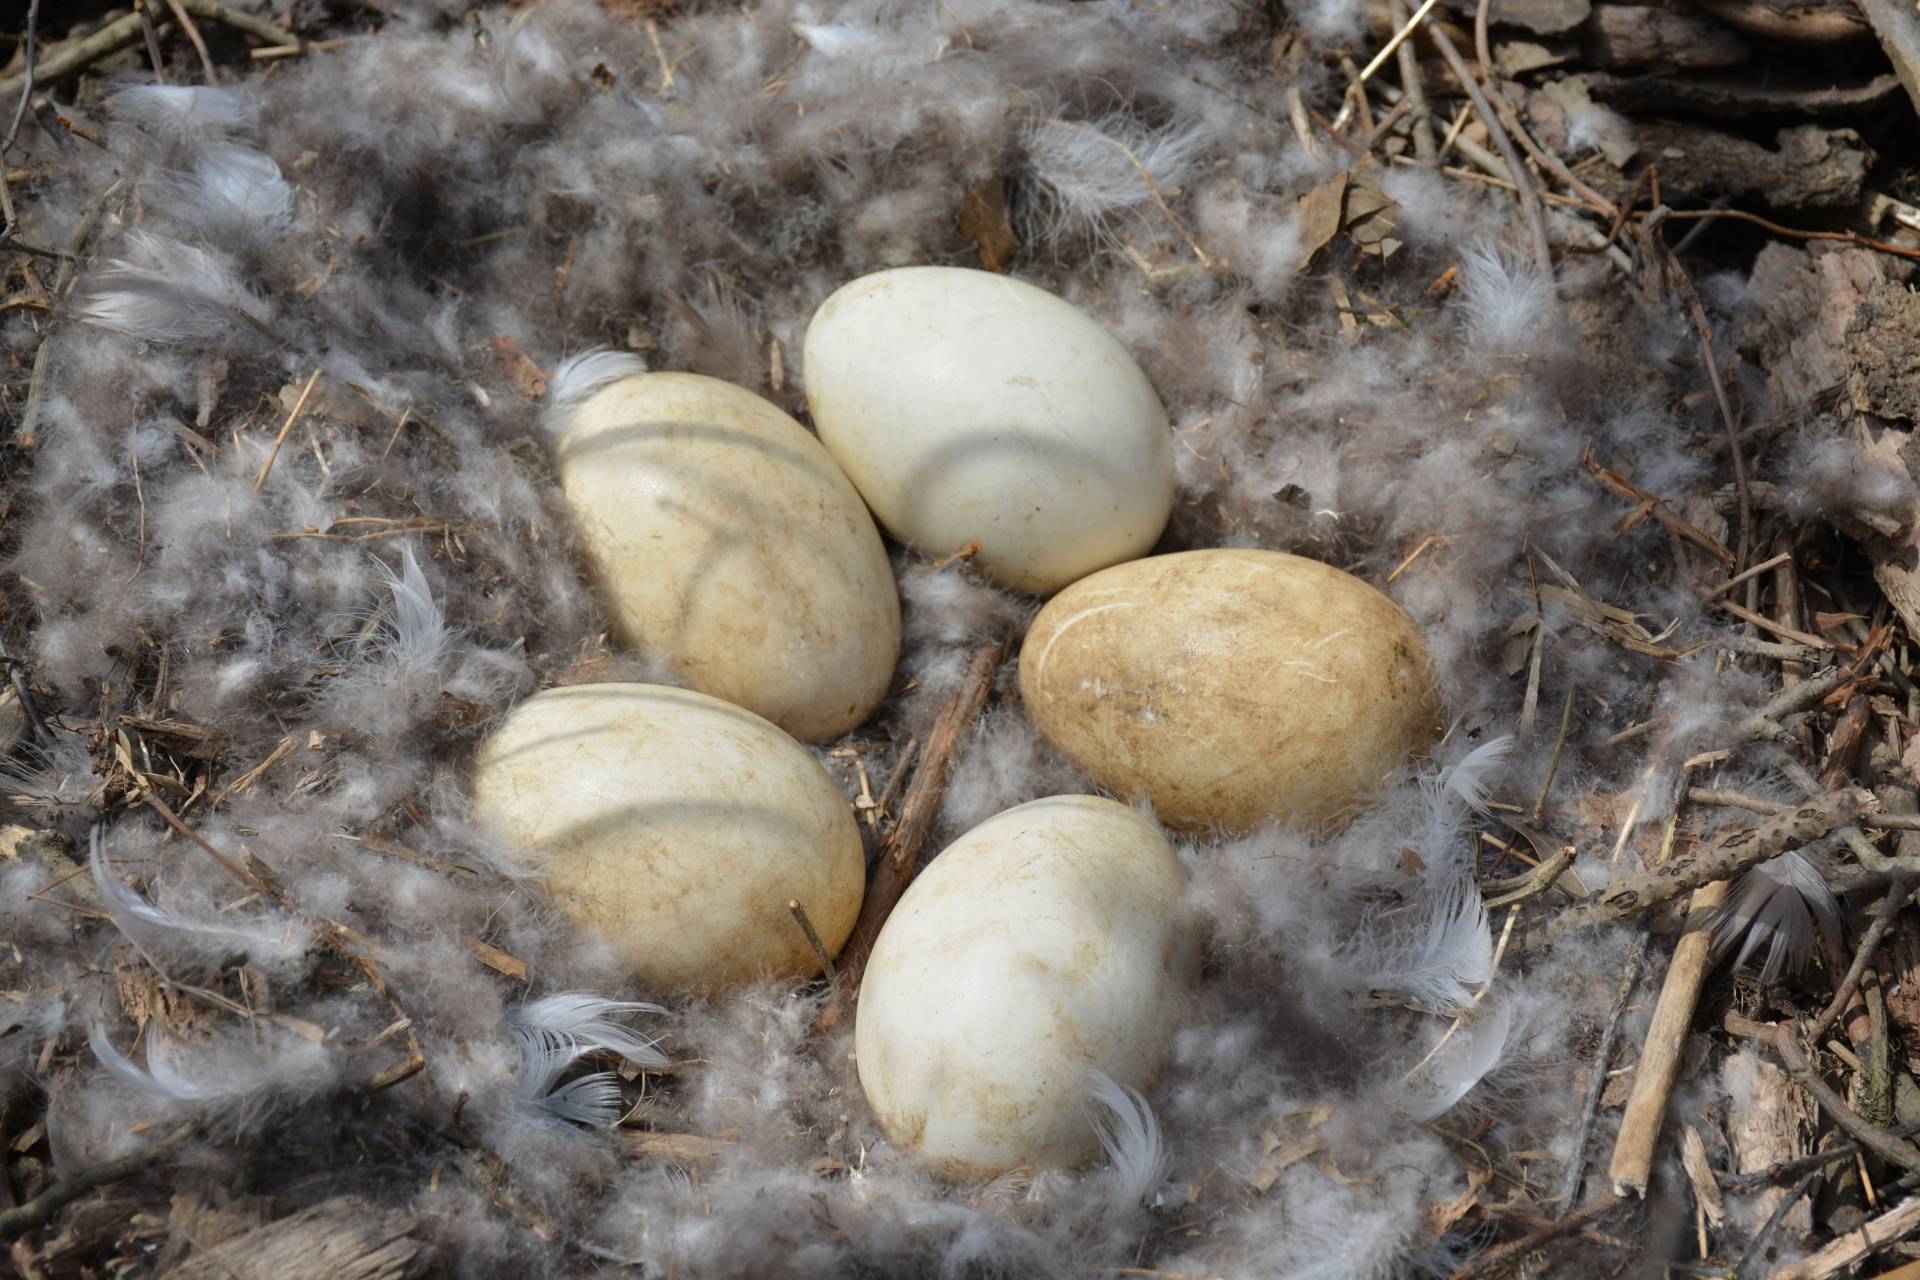 A nest of Canada goose eggs